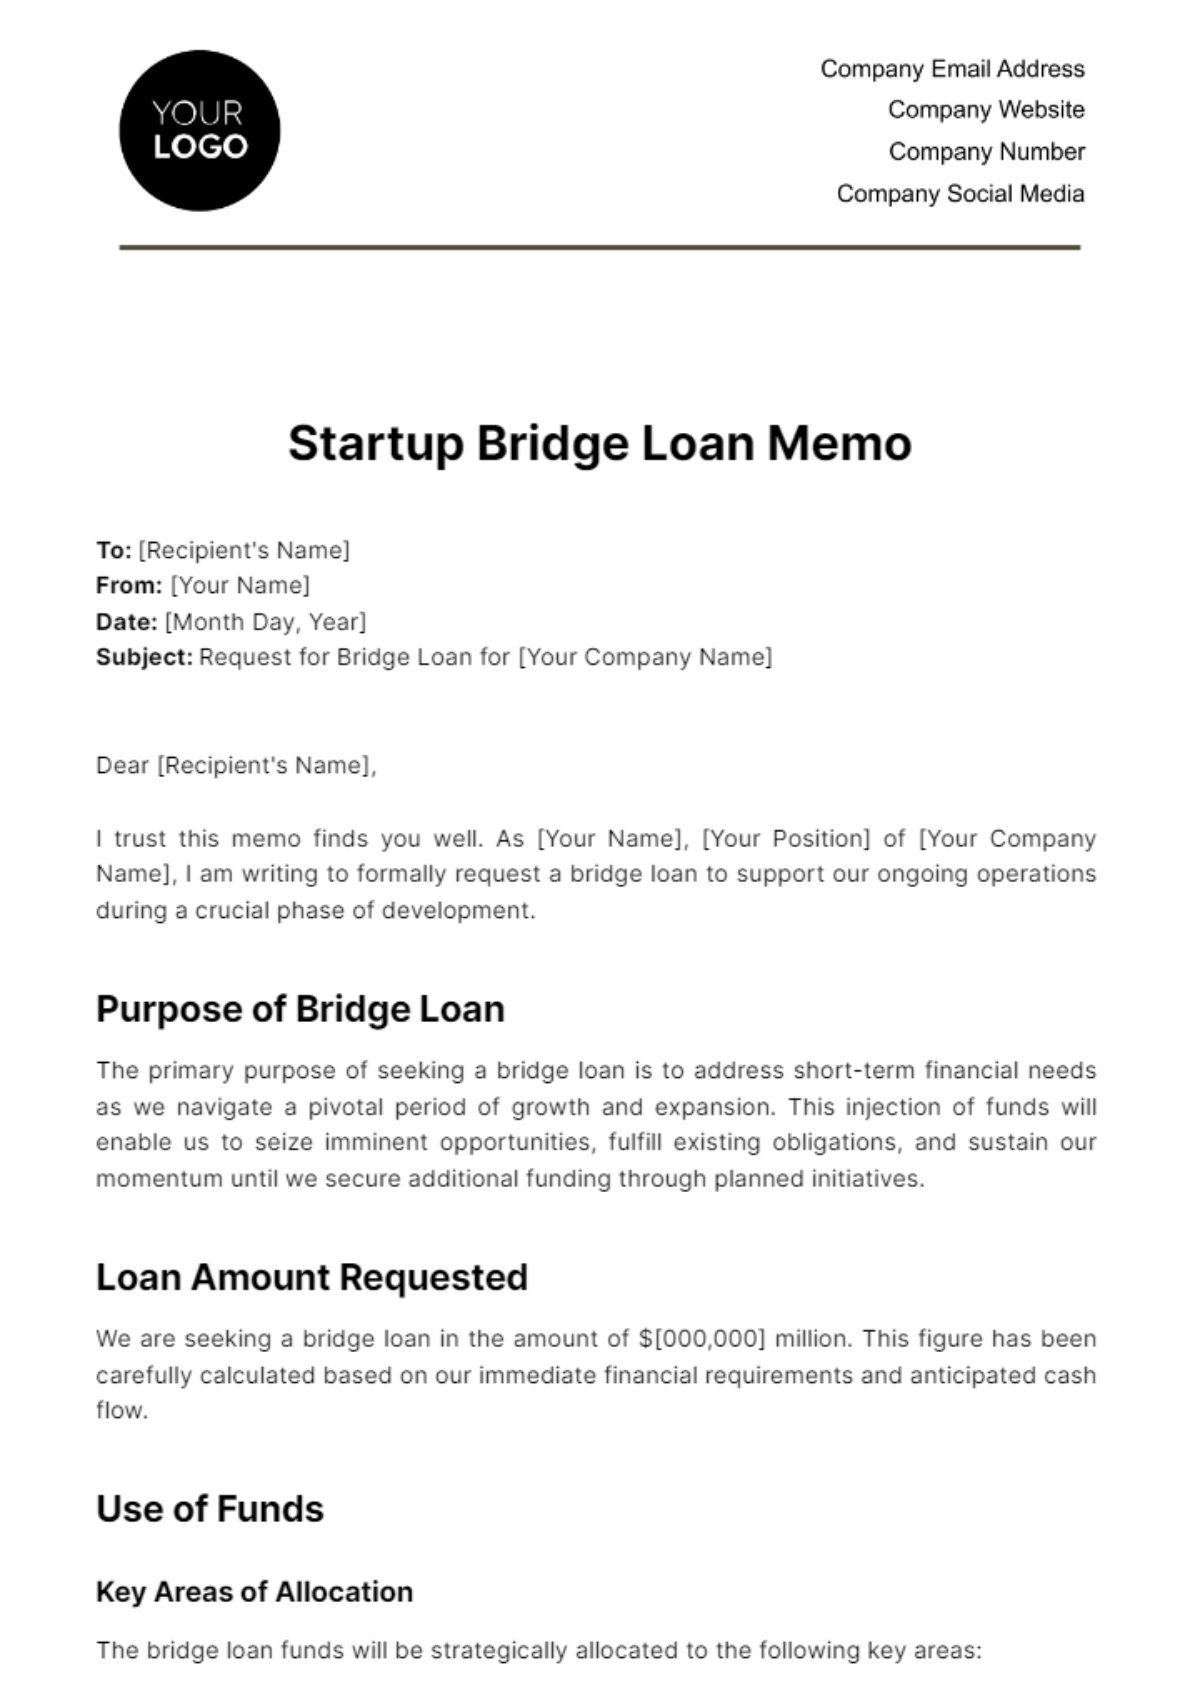 Startup Bridge Loan Memo Template